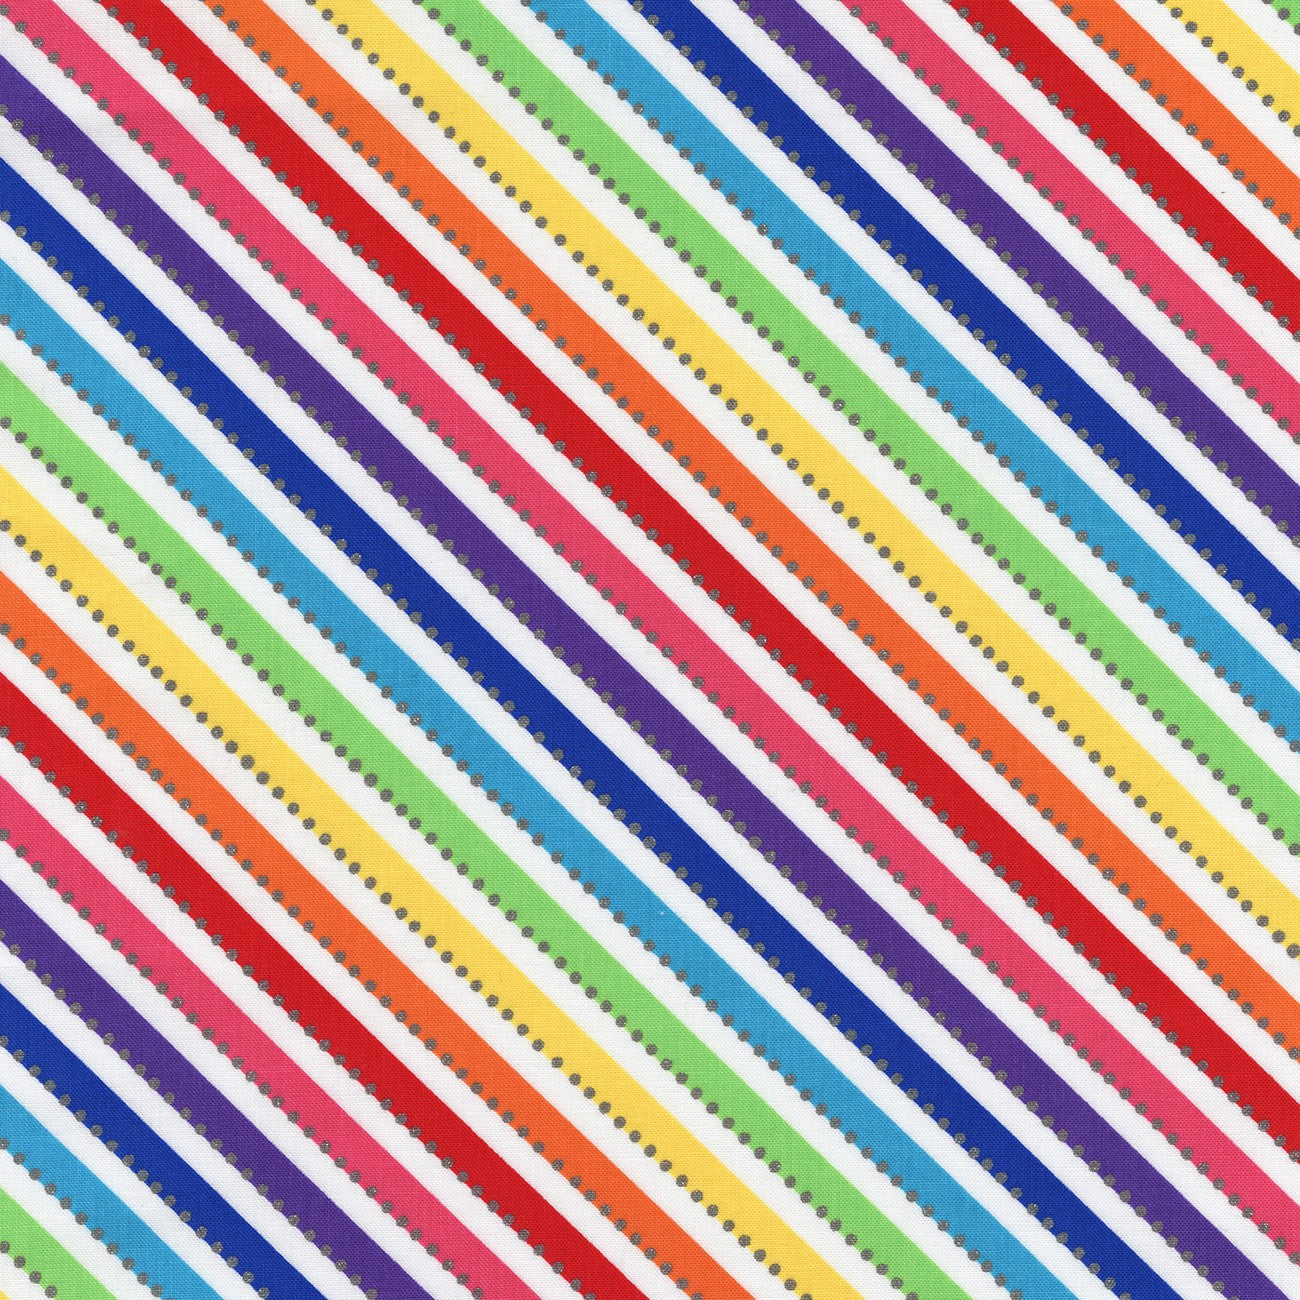 BeColourful / Rainbow Bias Stripes - White